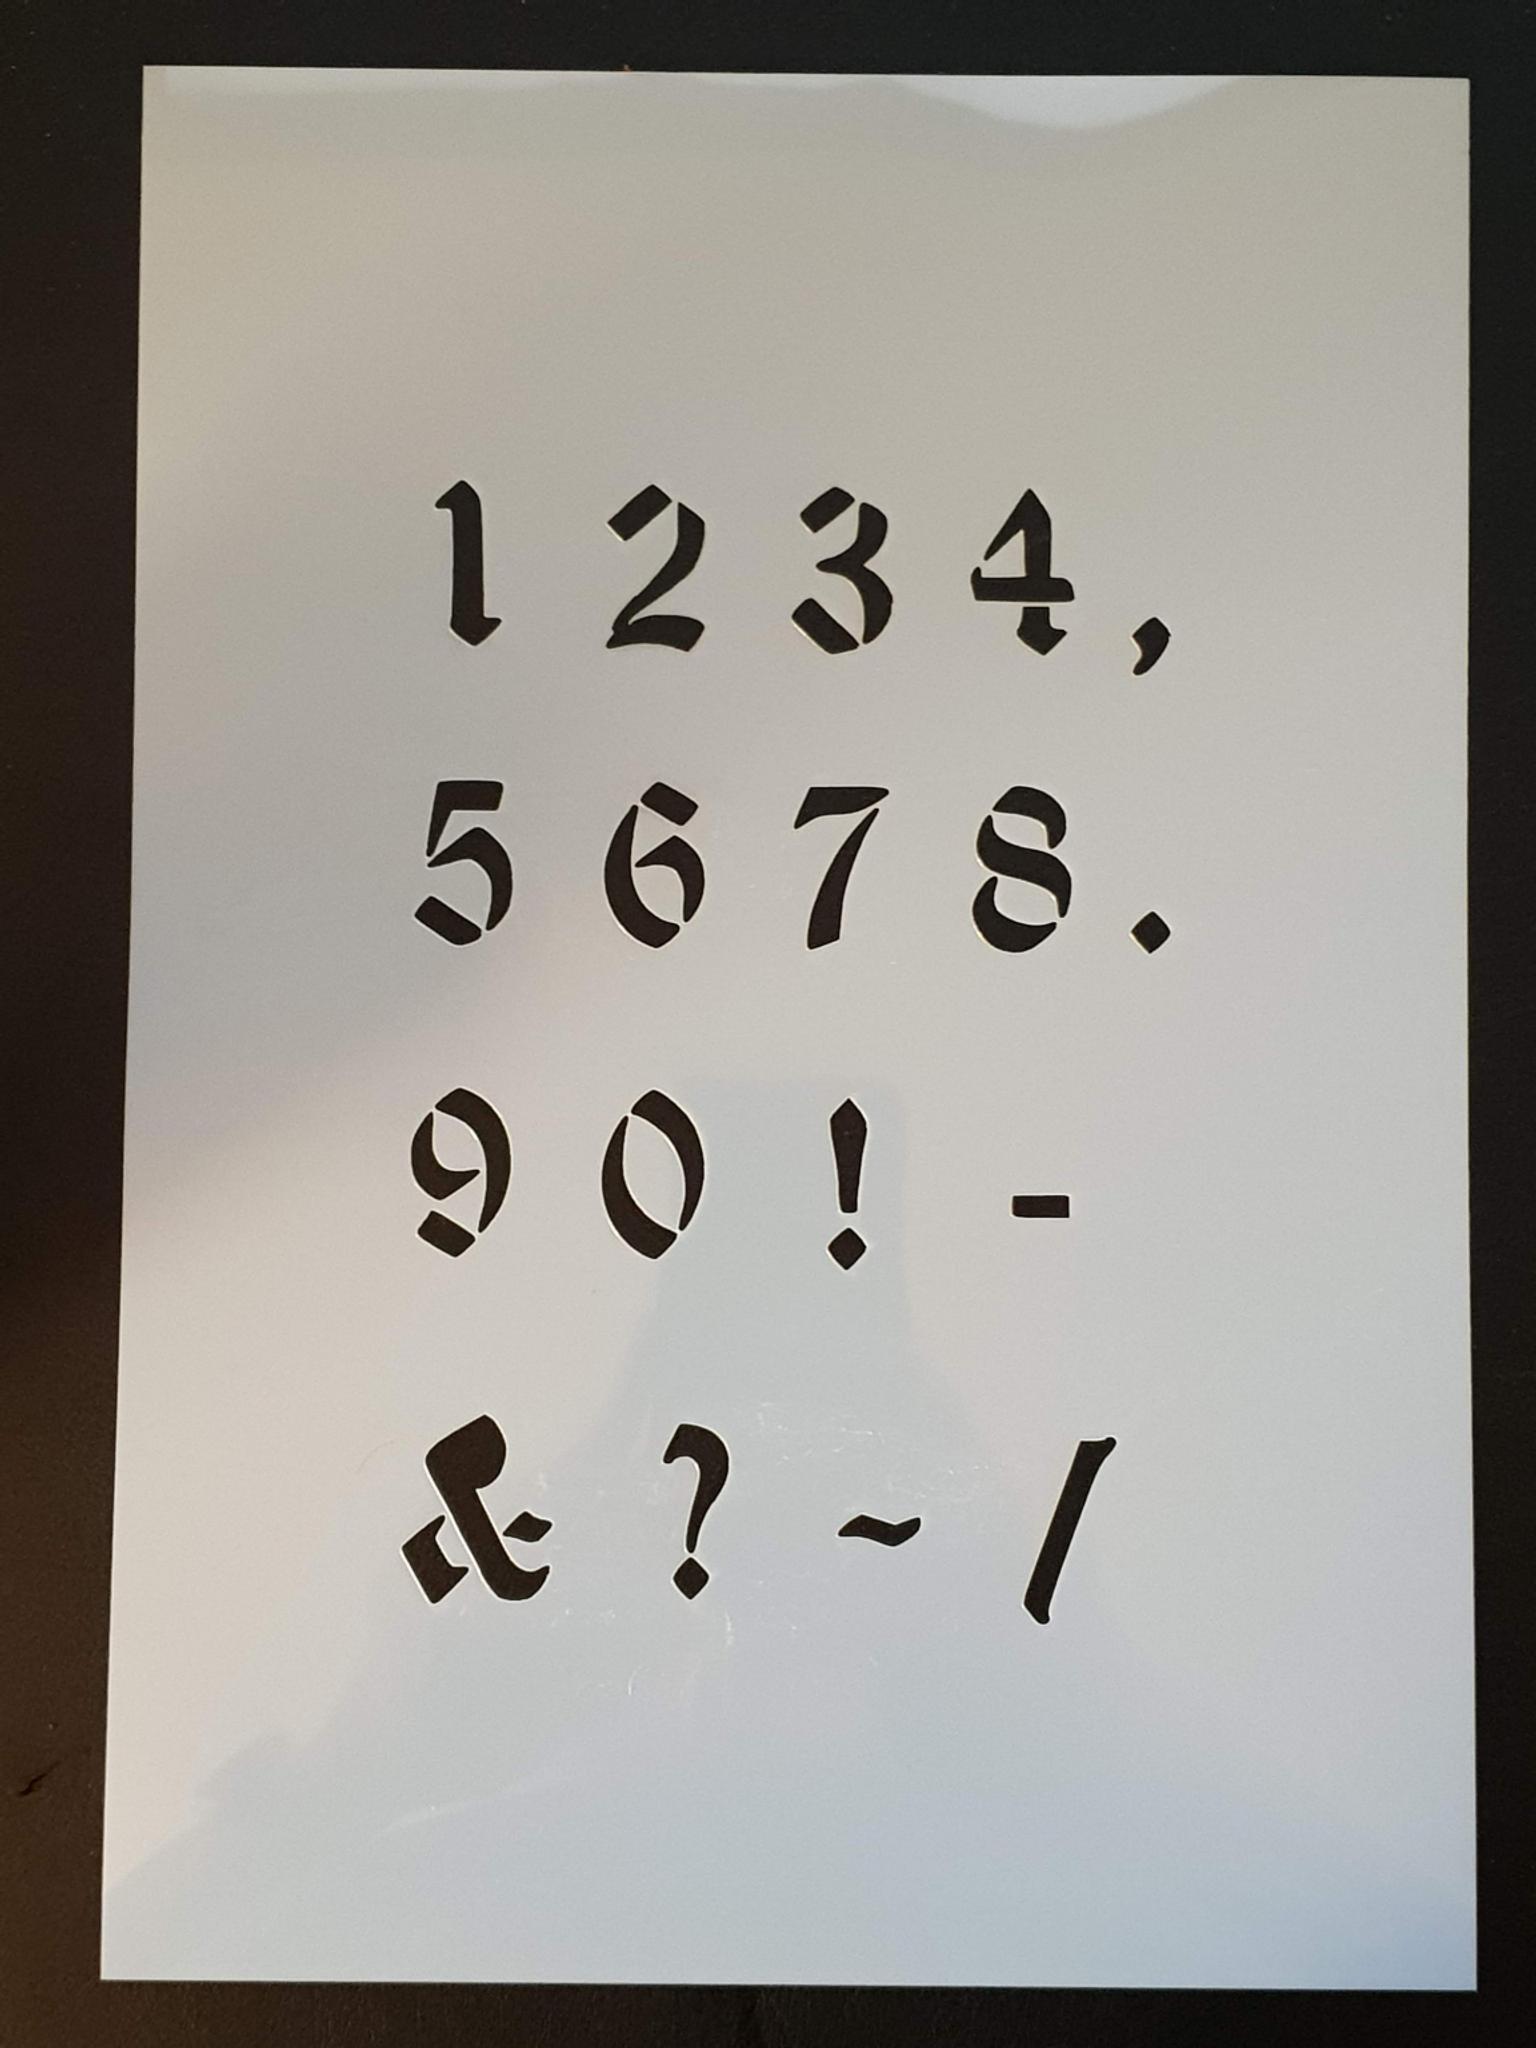 Airbrush Buchstaben Schablone Alte Schrift In Duren For 6 99 For Sale Shpock